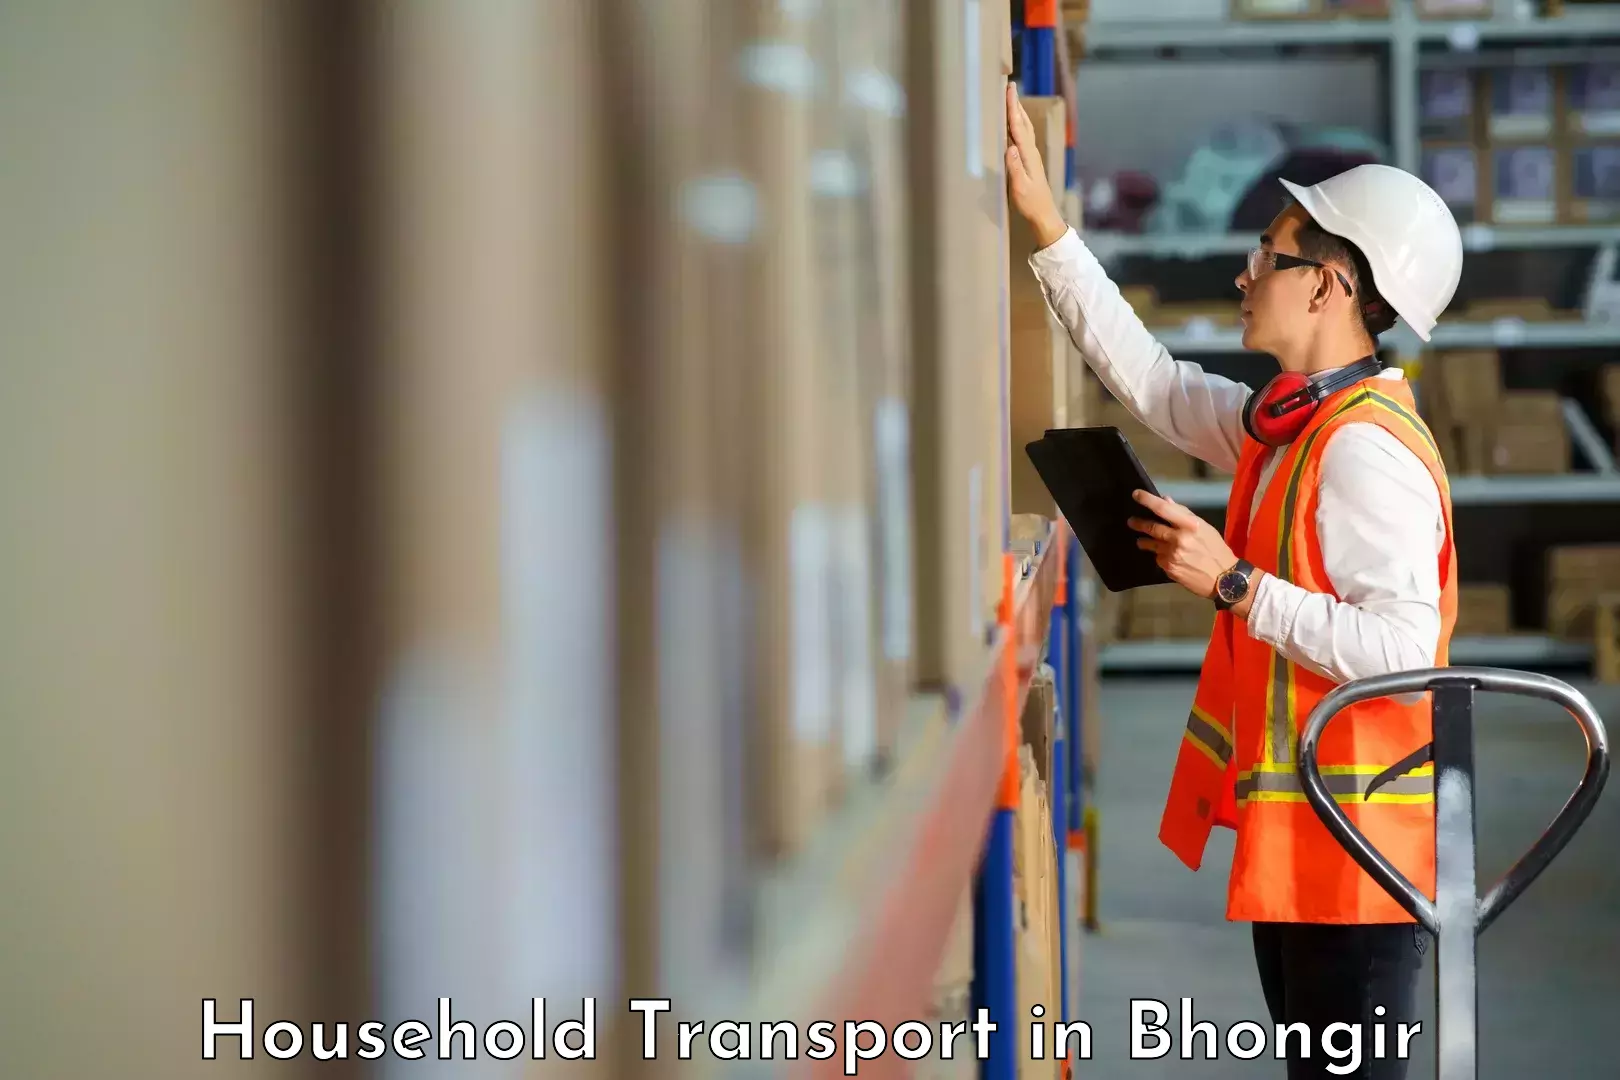 Furniture transport experts in Bhongir